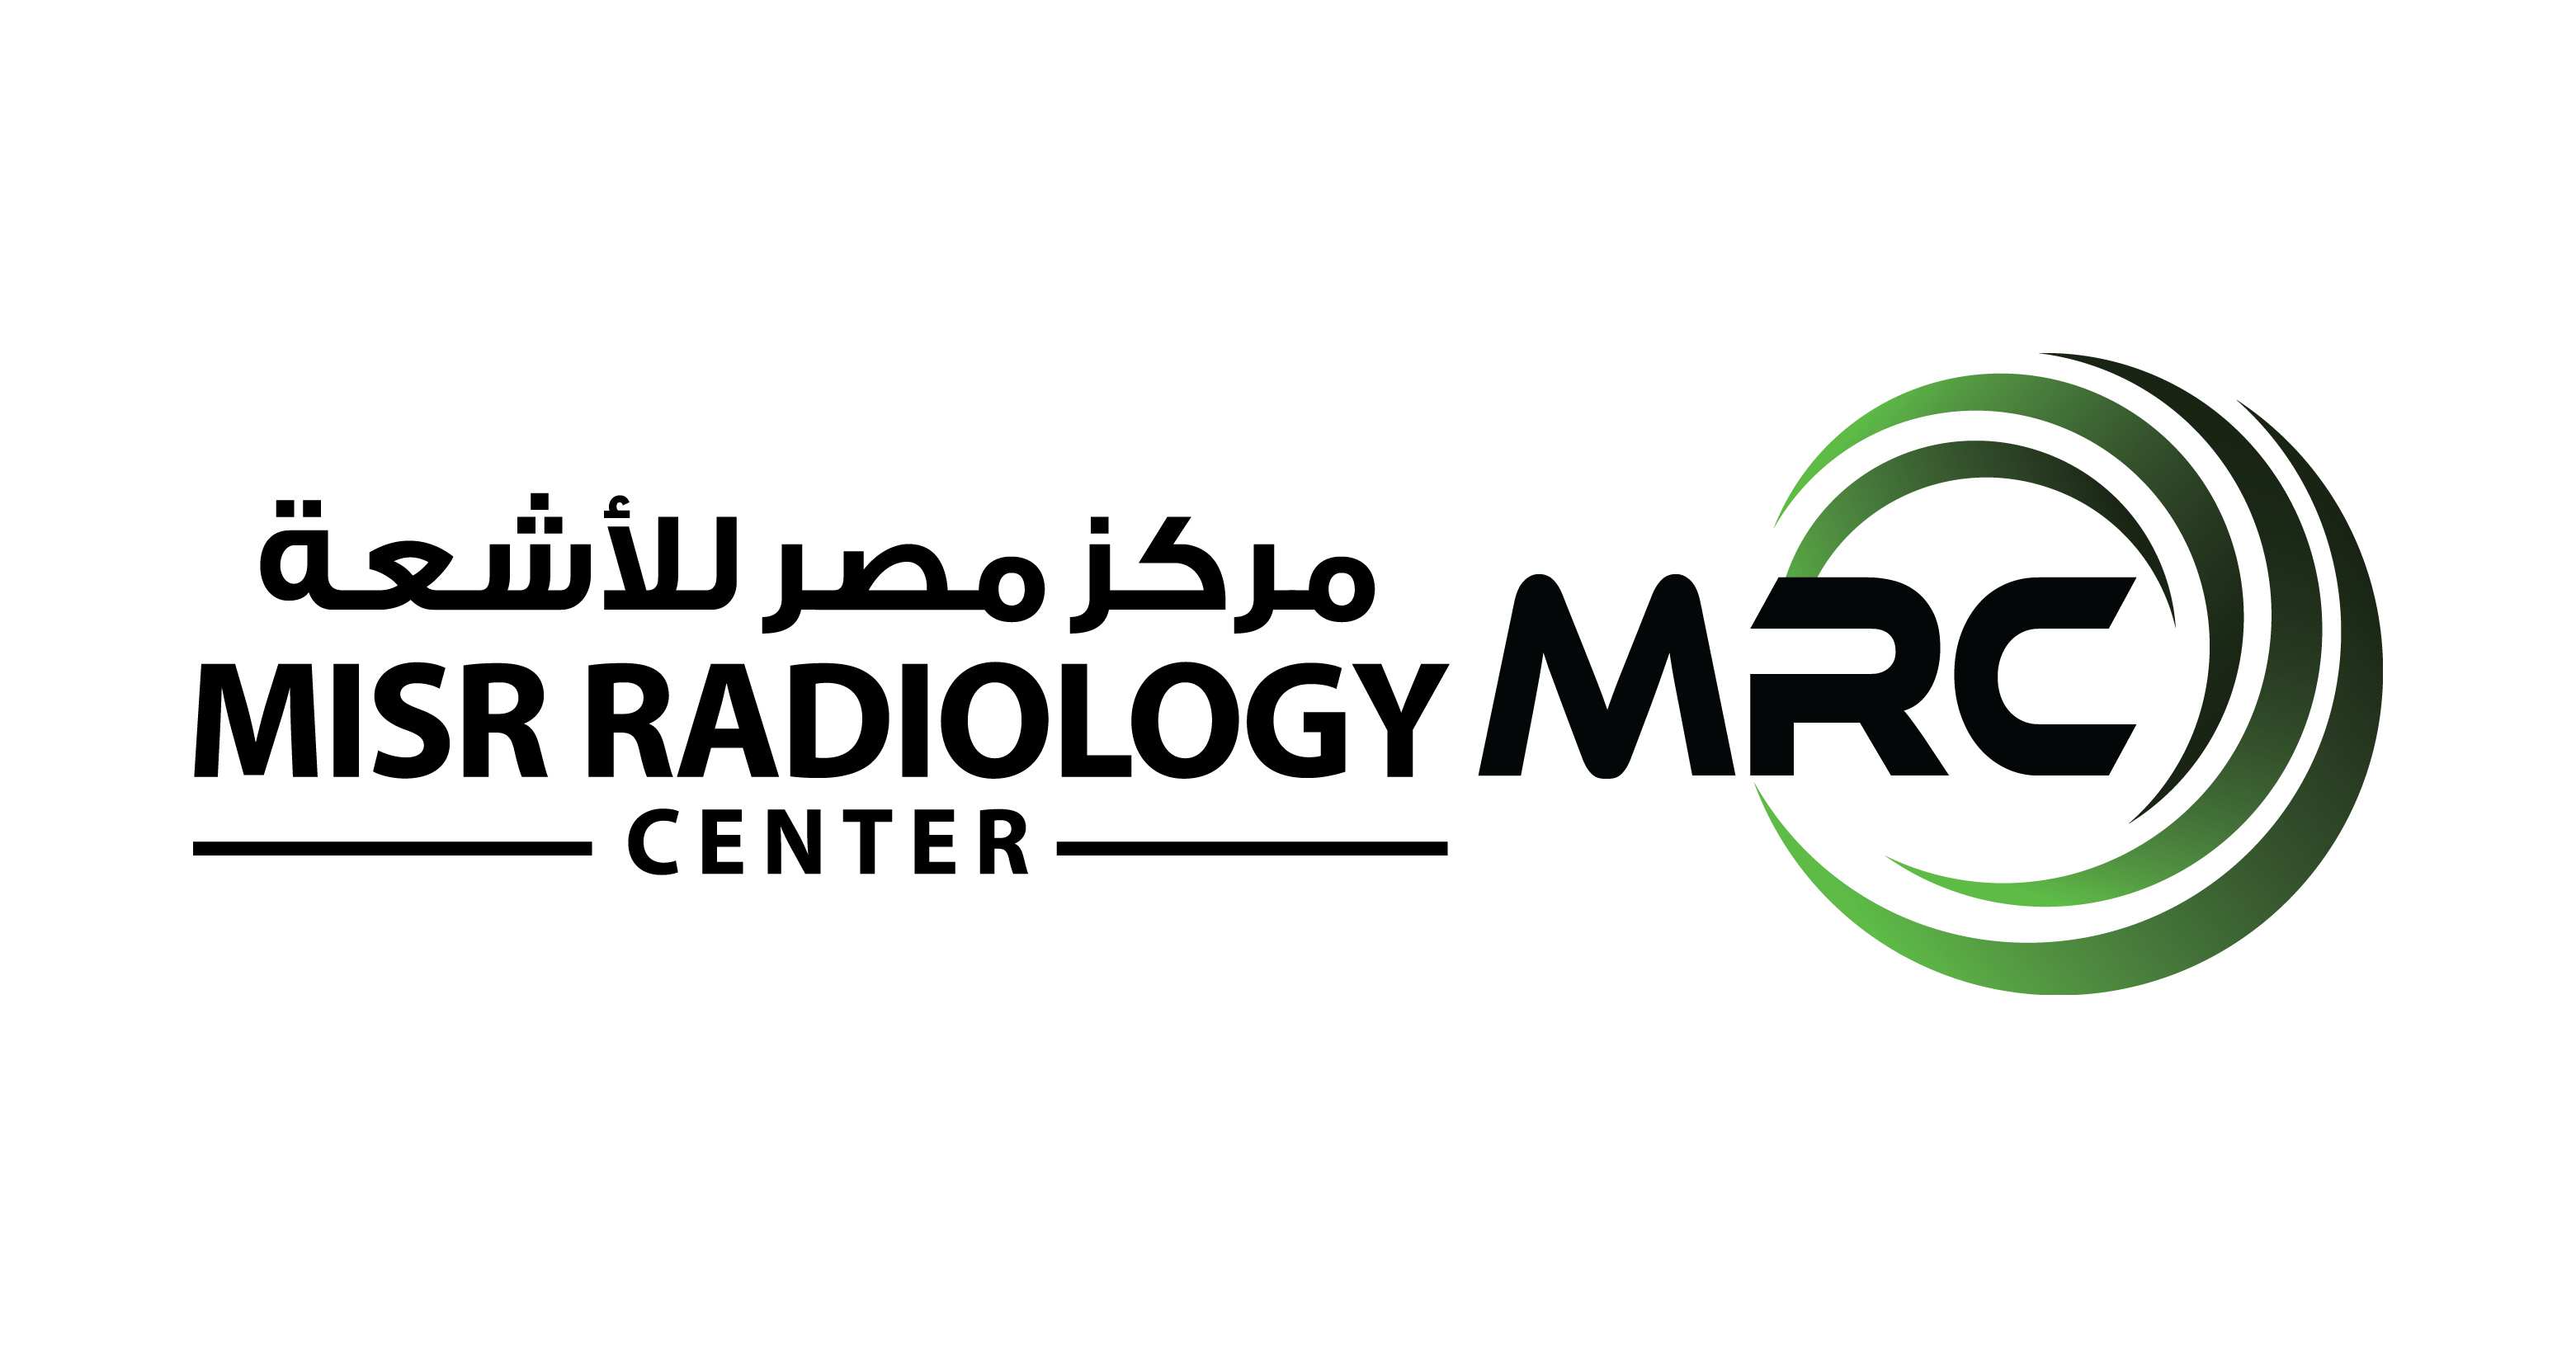 Misr Radiology Center